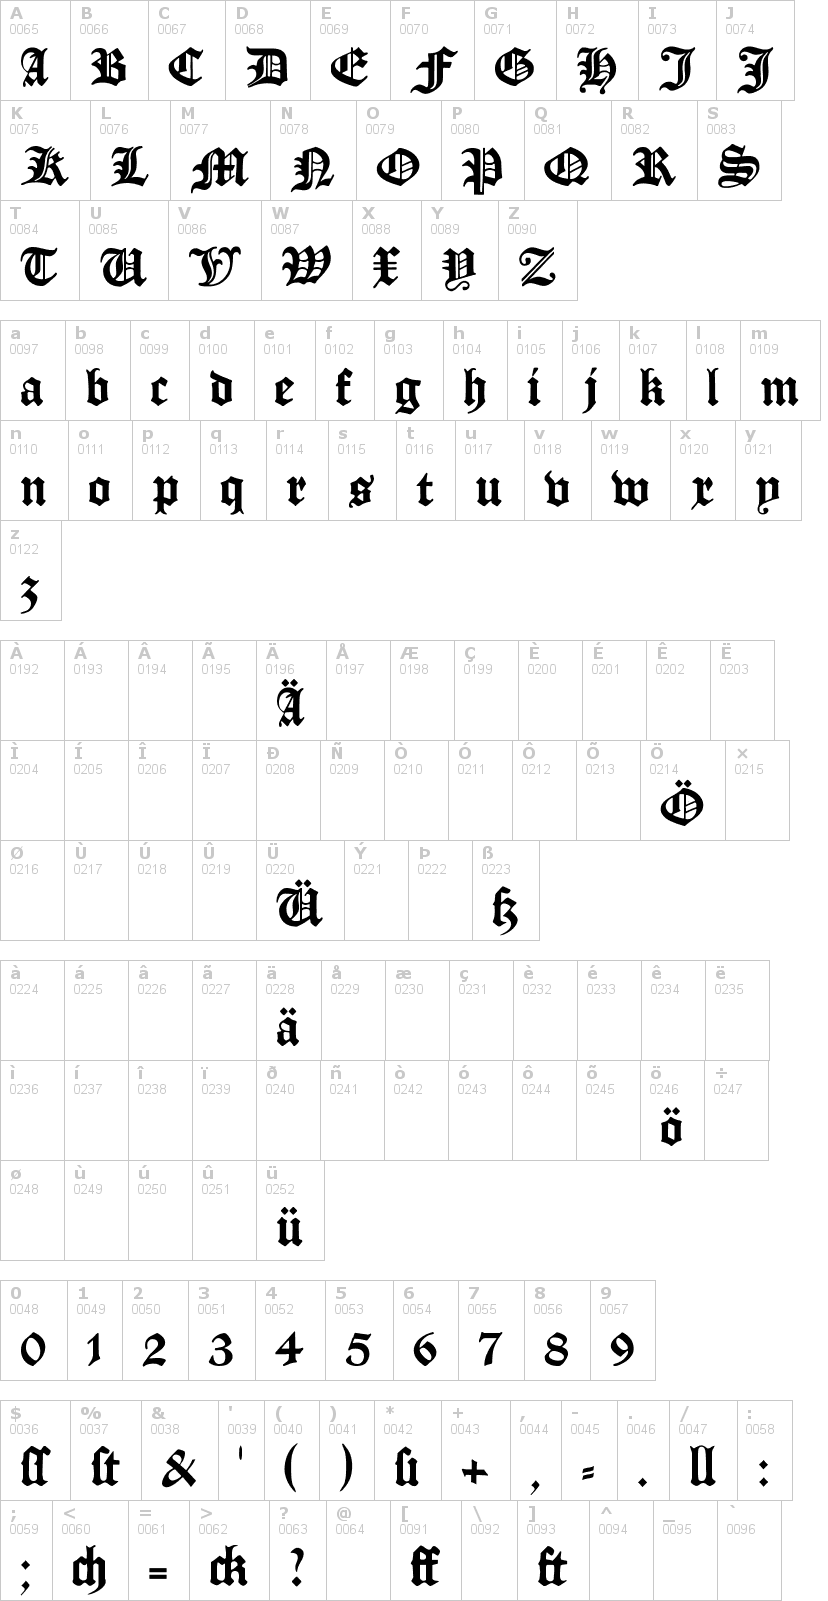 Lettere dell'alfabeto del font manuskript-gotisch con le quali è possibile realizzare adesivi prespaziati